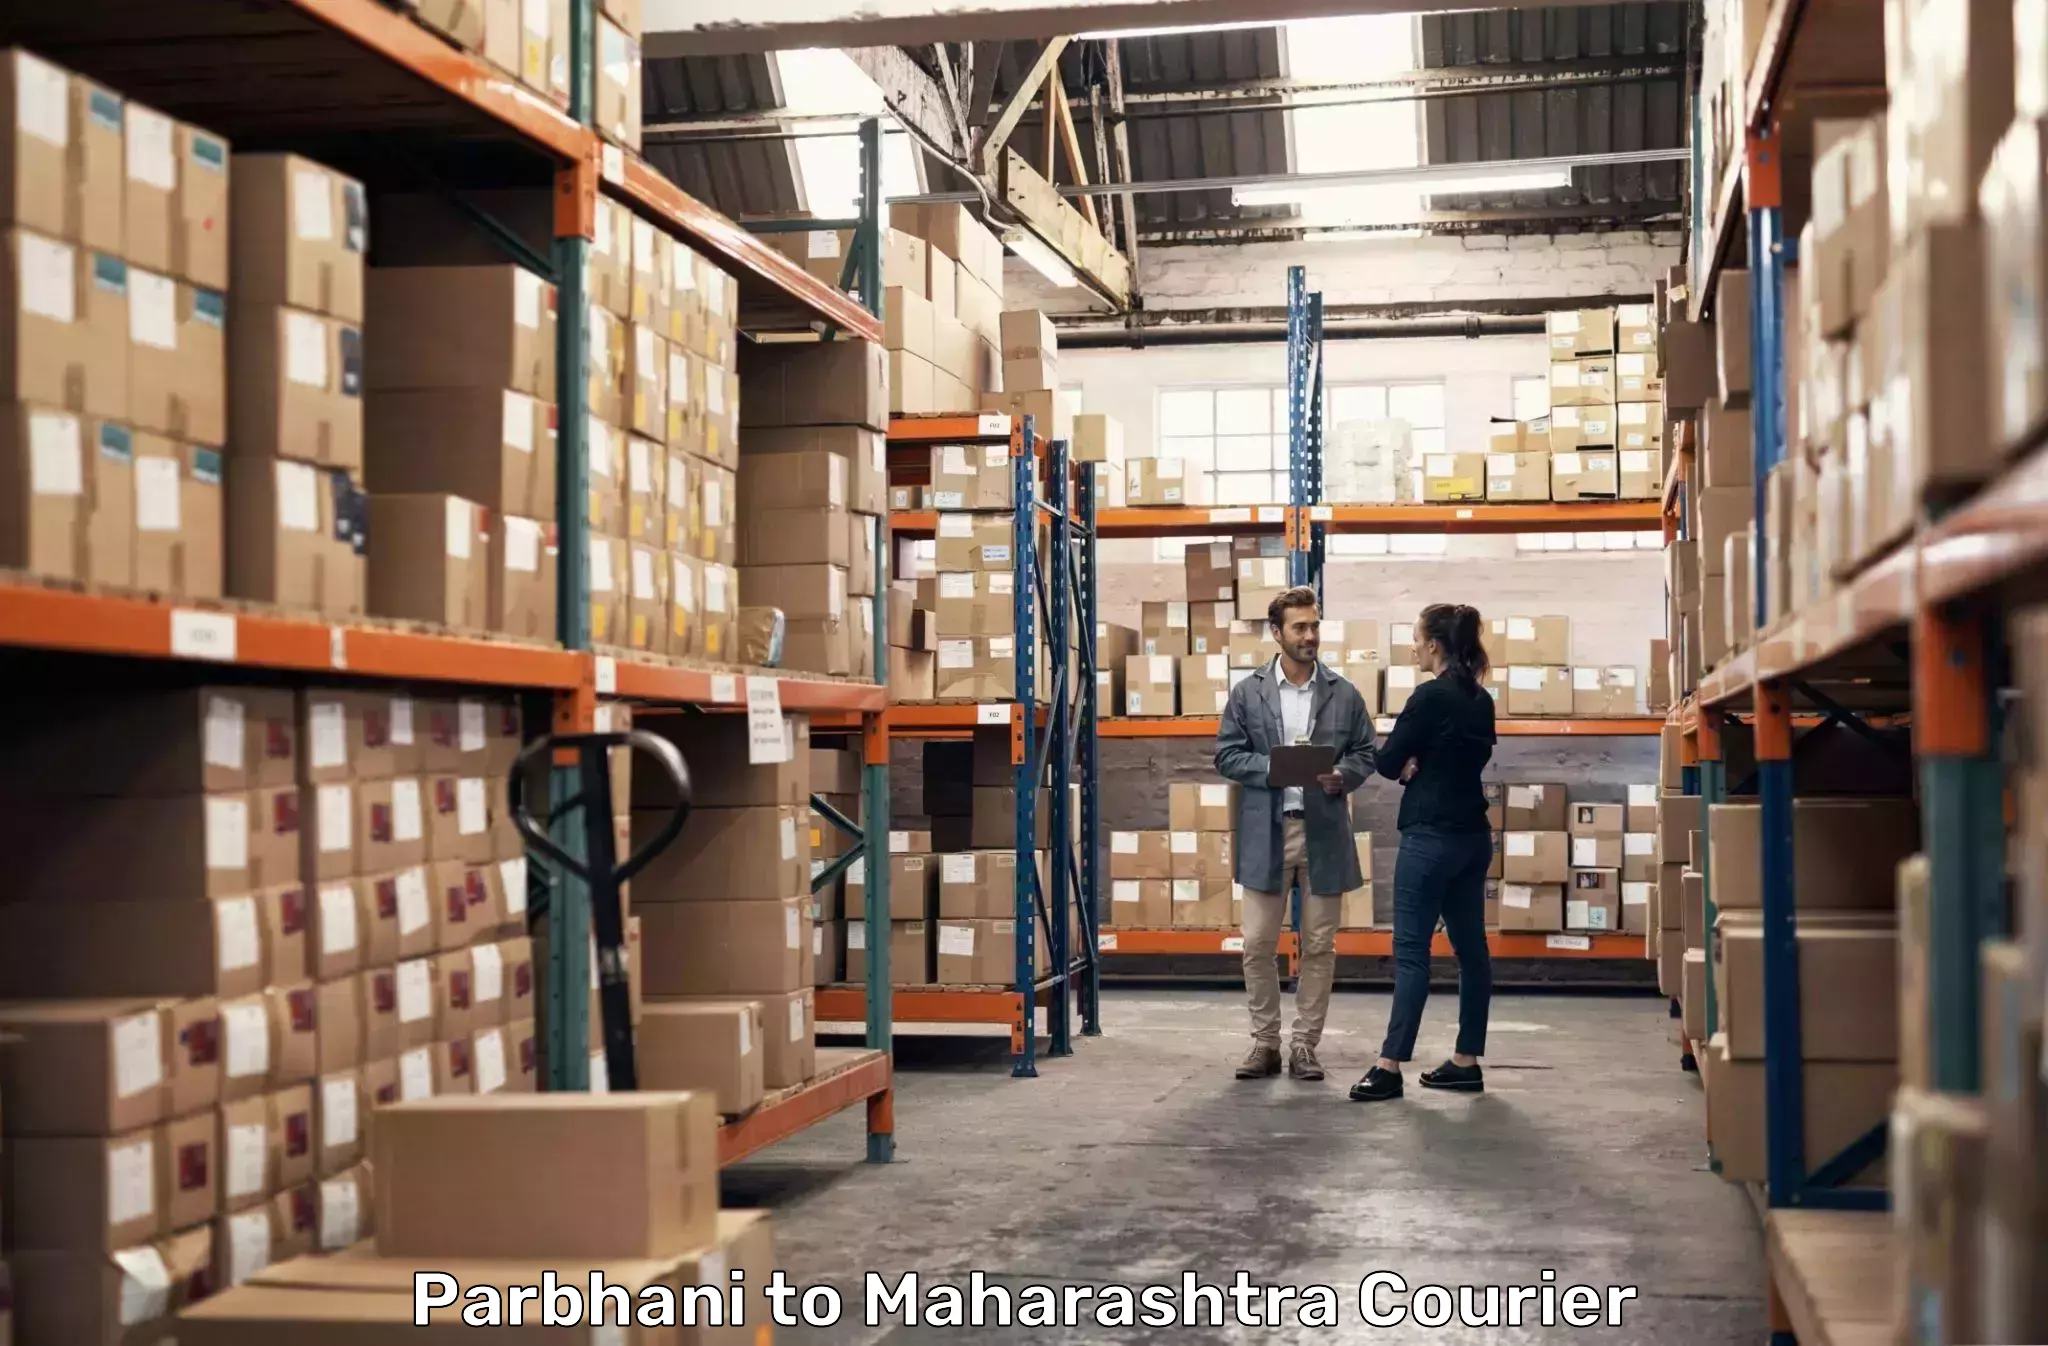 Expedited shipping methods Parbhani to Aurangabad